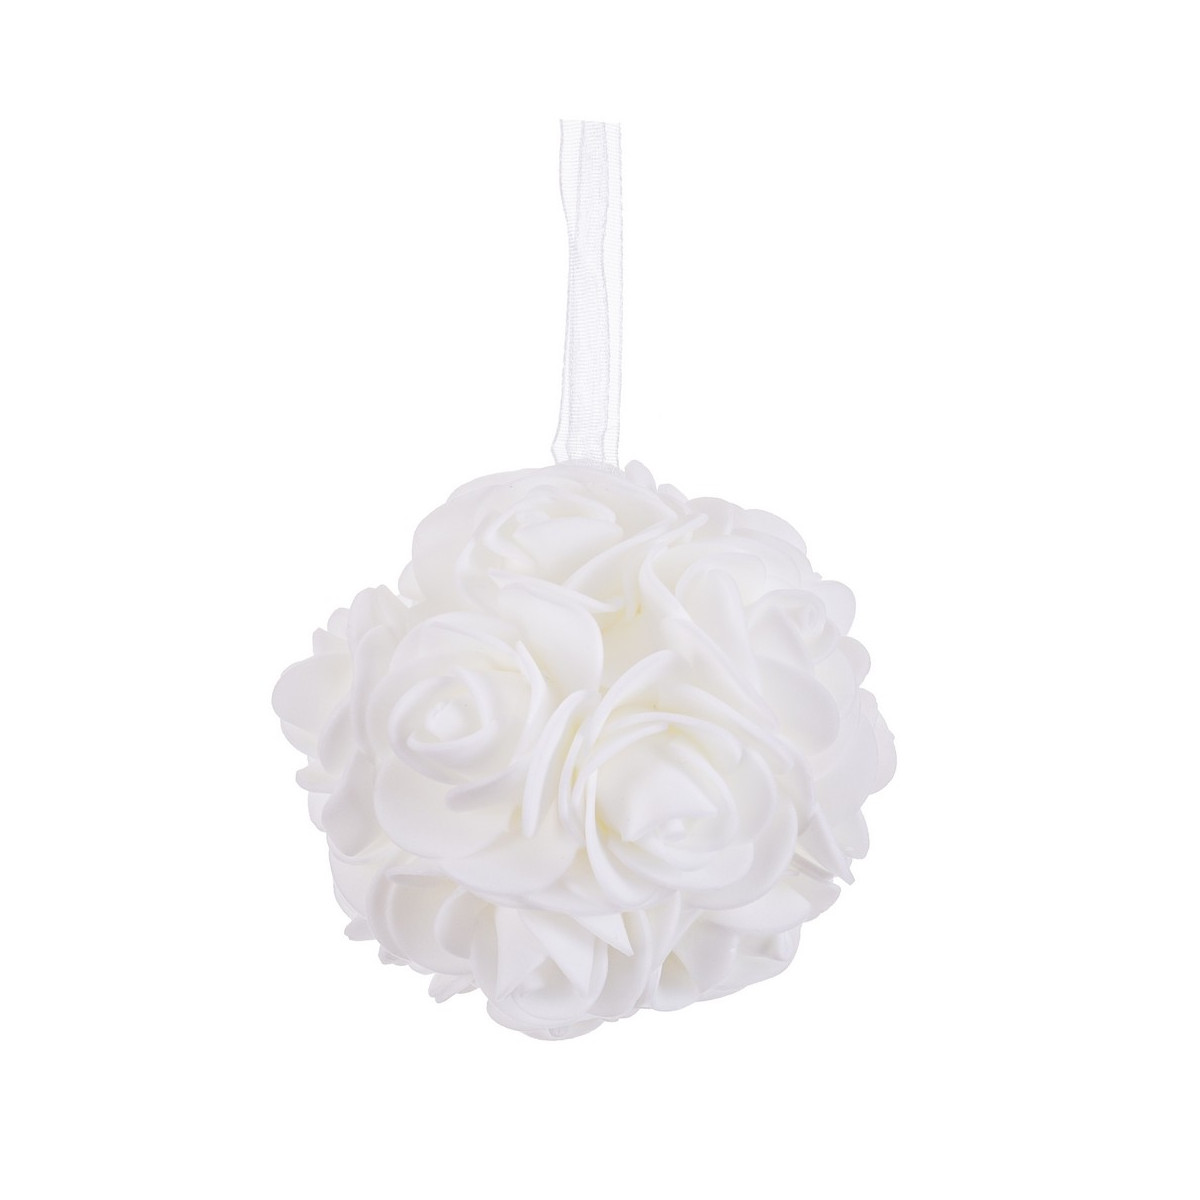 Boule de roses blanches 8 x 8 x 8 cm